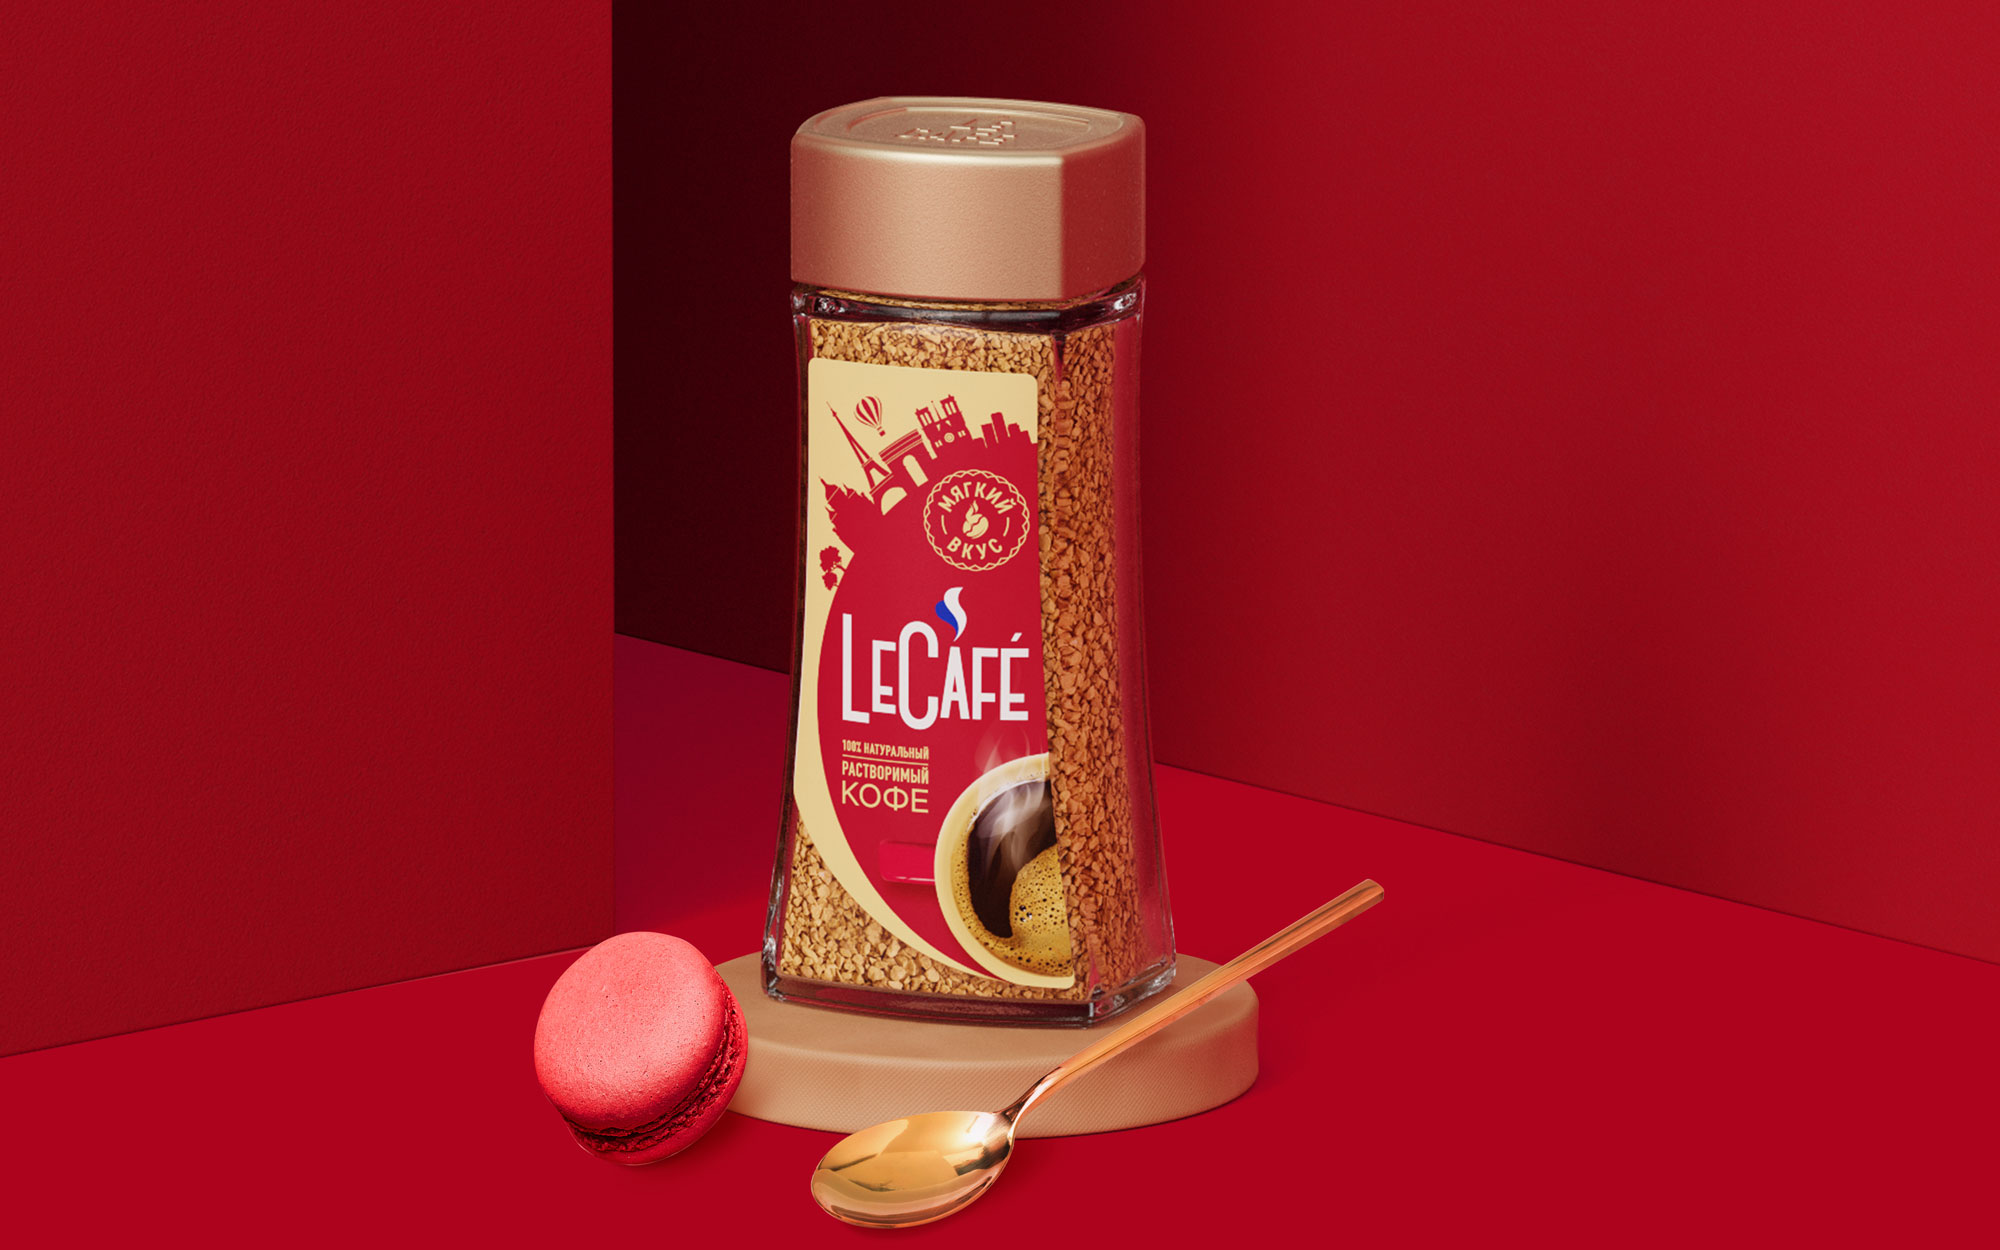 LeCafé 咖啡包装设计欣赏(图1)